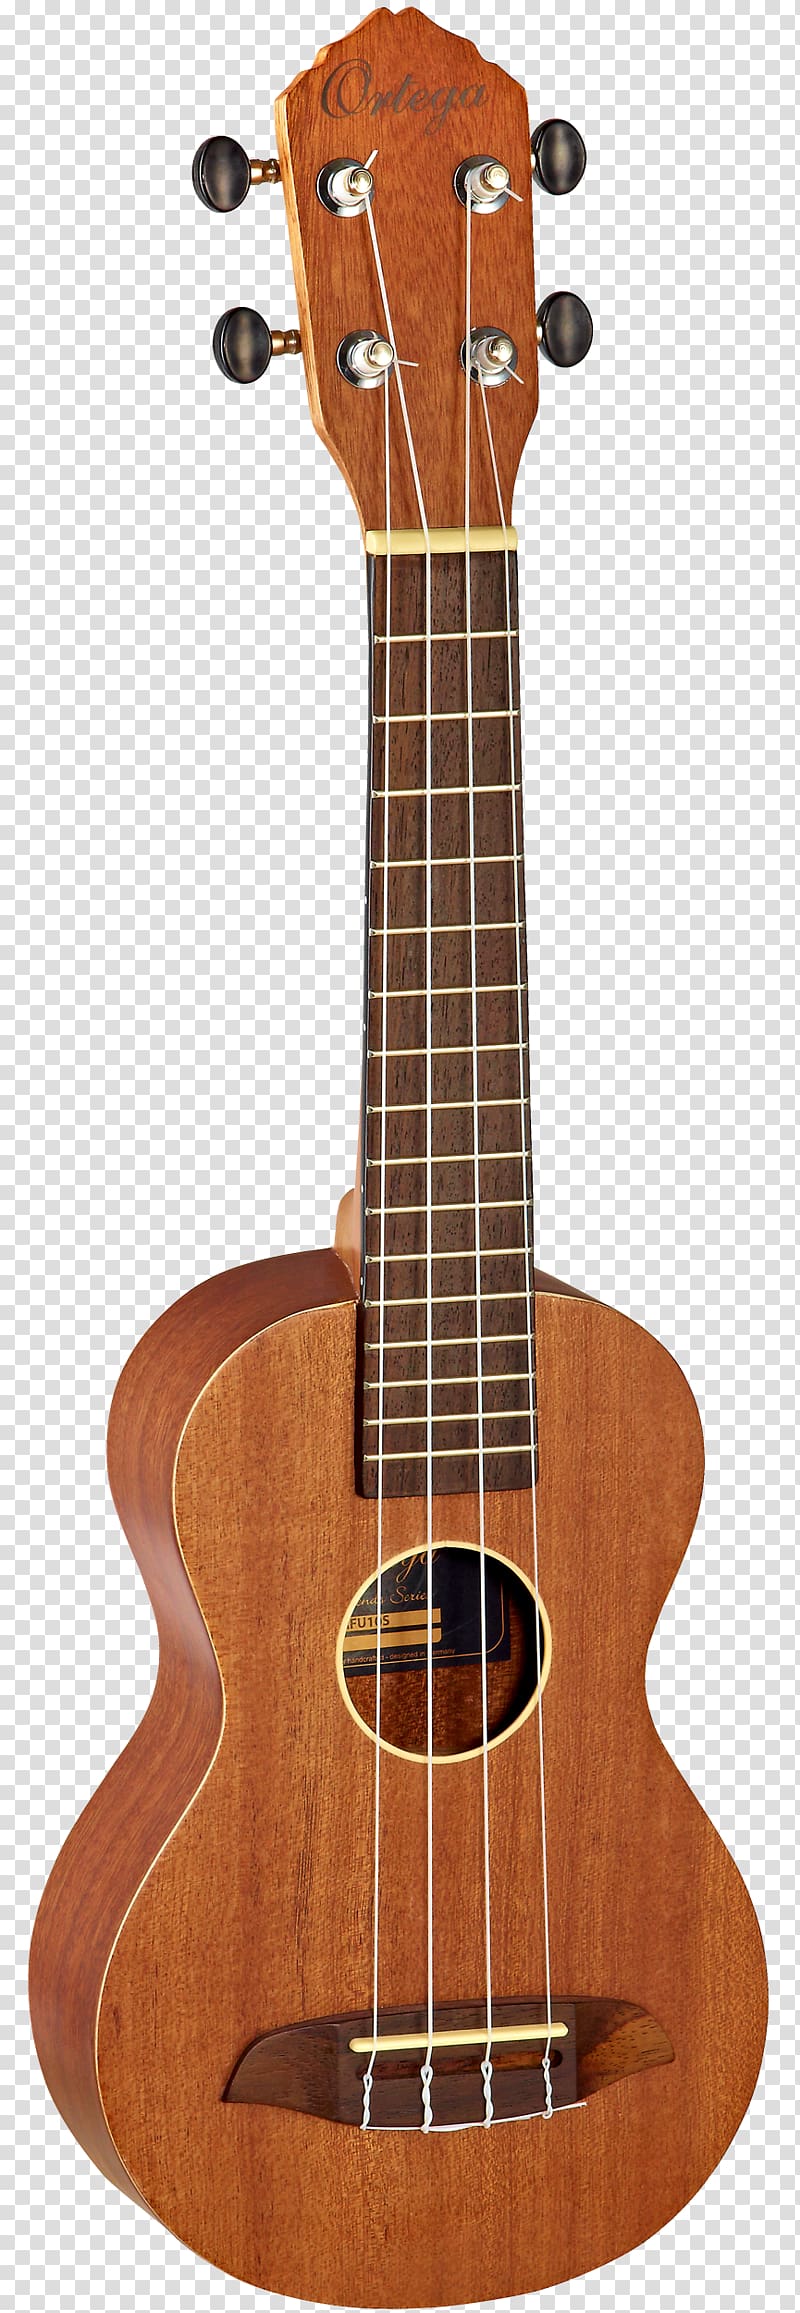 Ukulele String Instruments Music Guitar, guitar transparent background PNG clipart